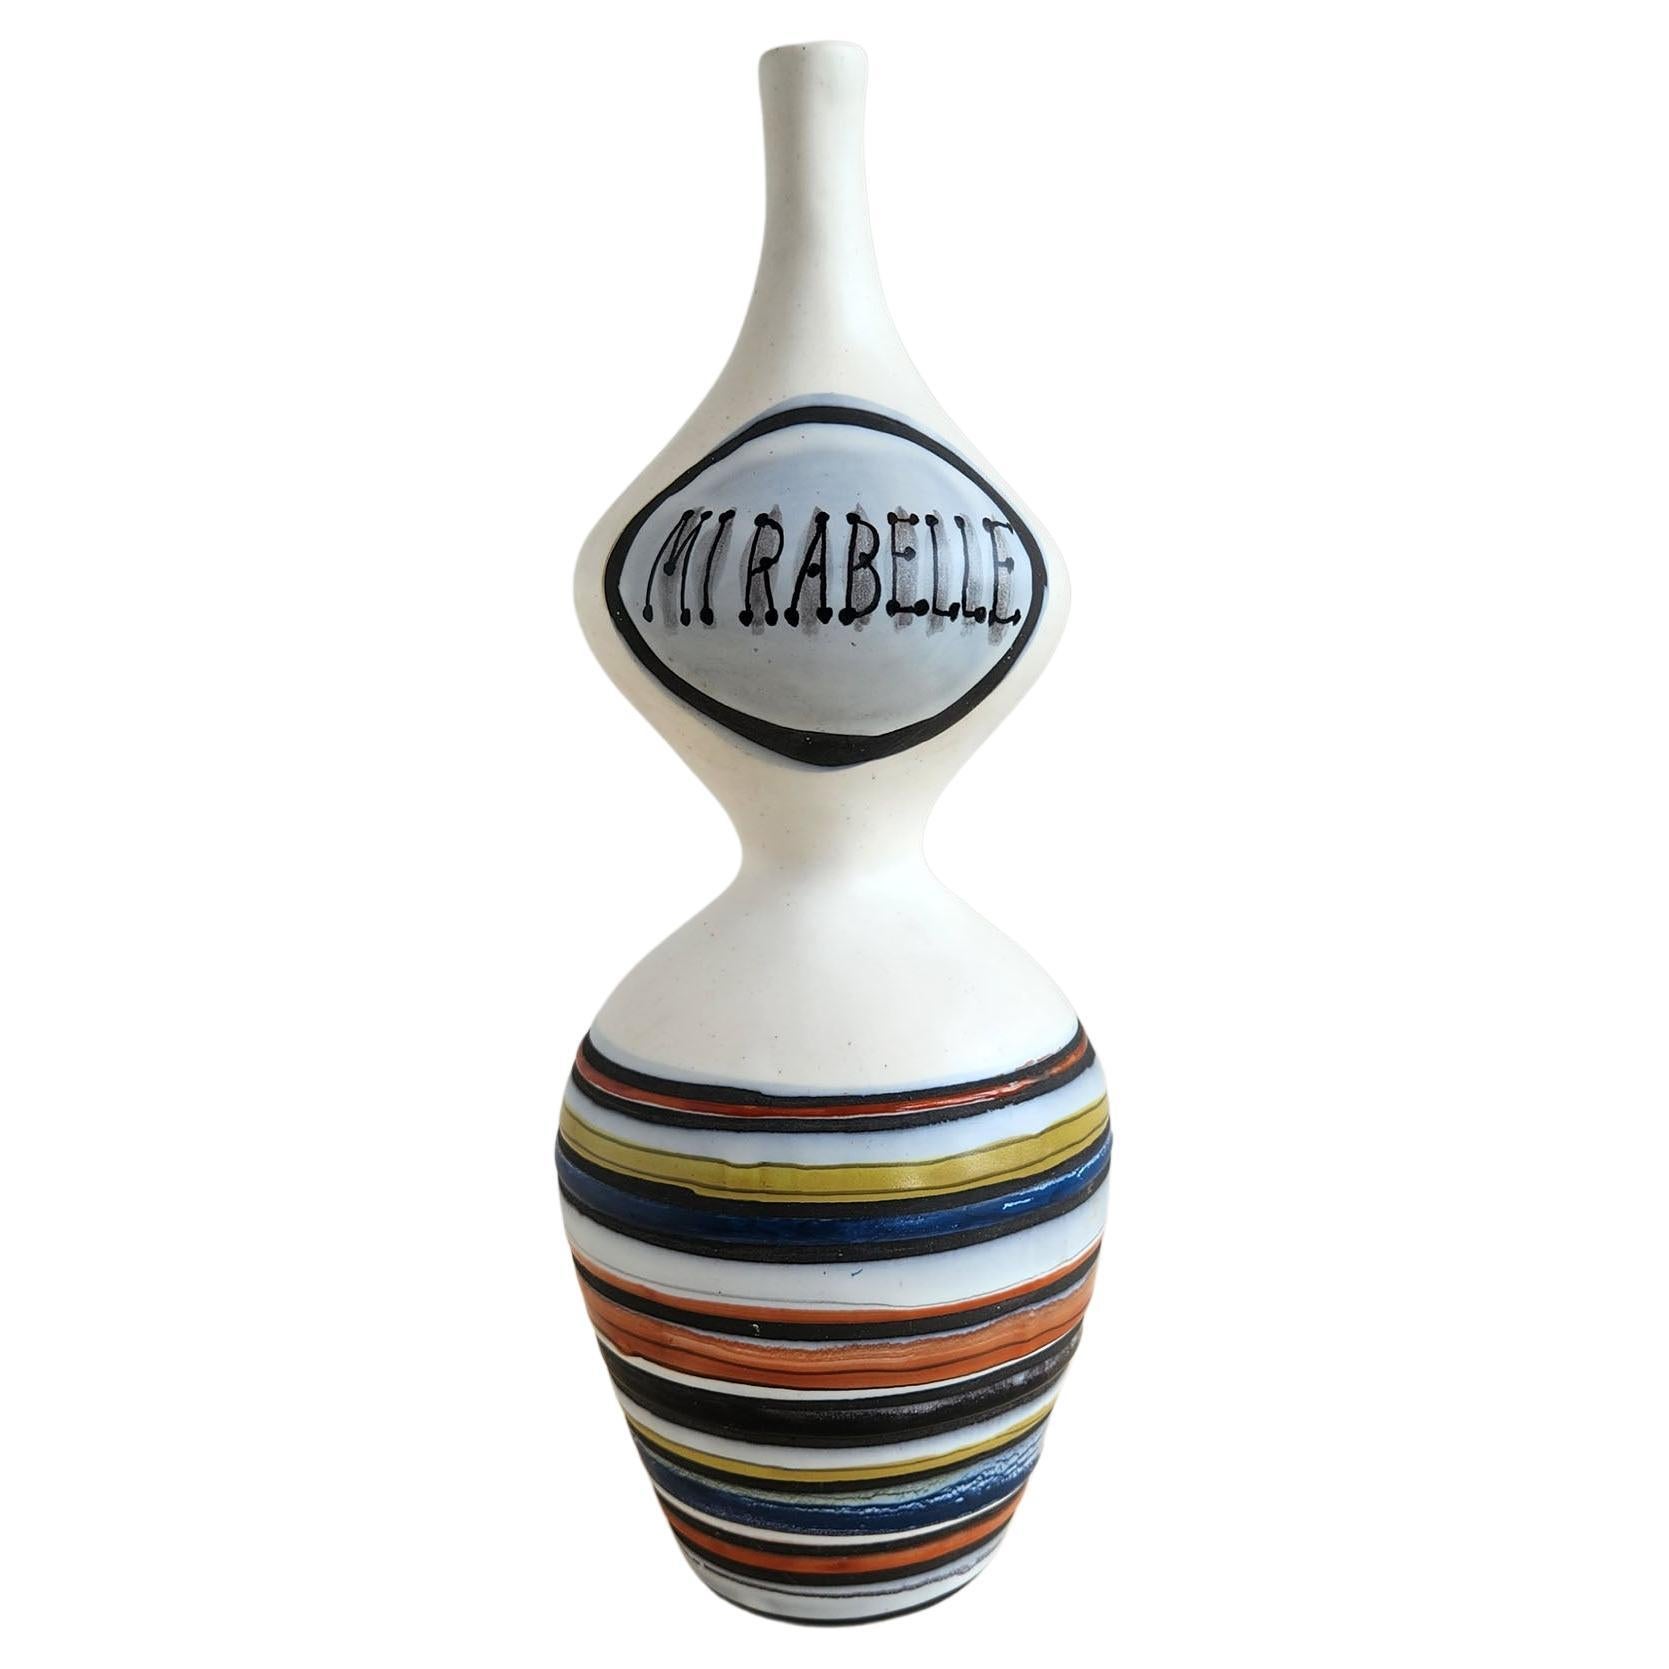 Roger Capron - Vintage Freeform Ceramic Mirabelle Flask  For Sale